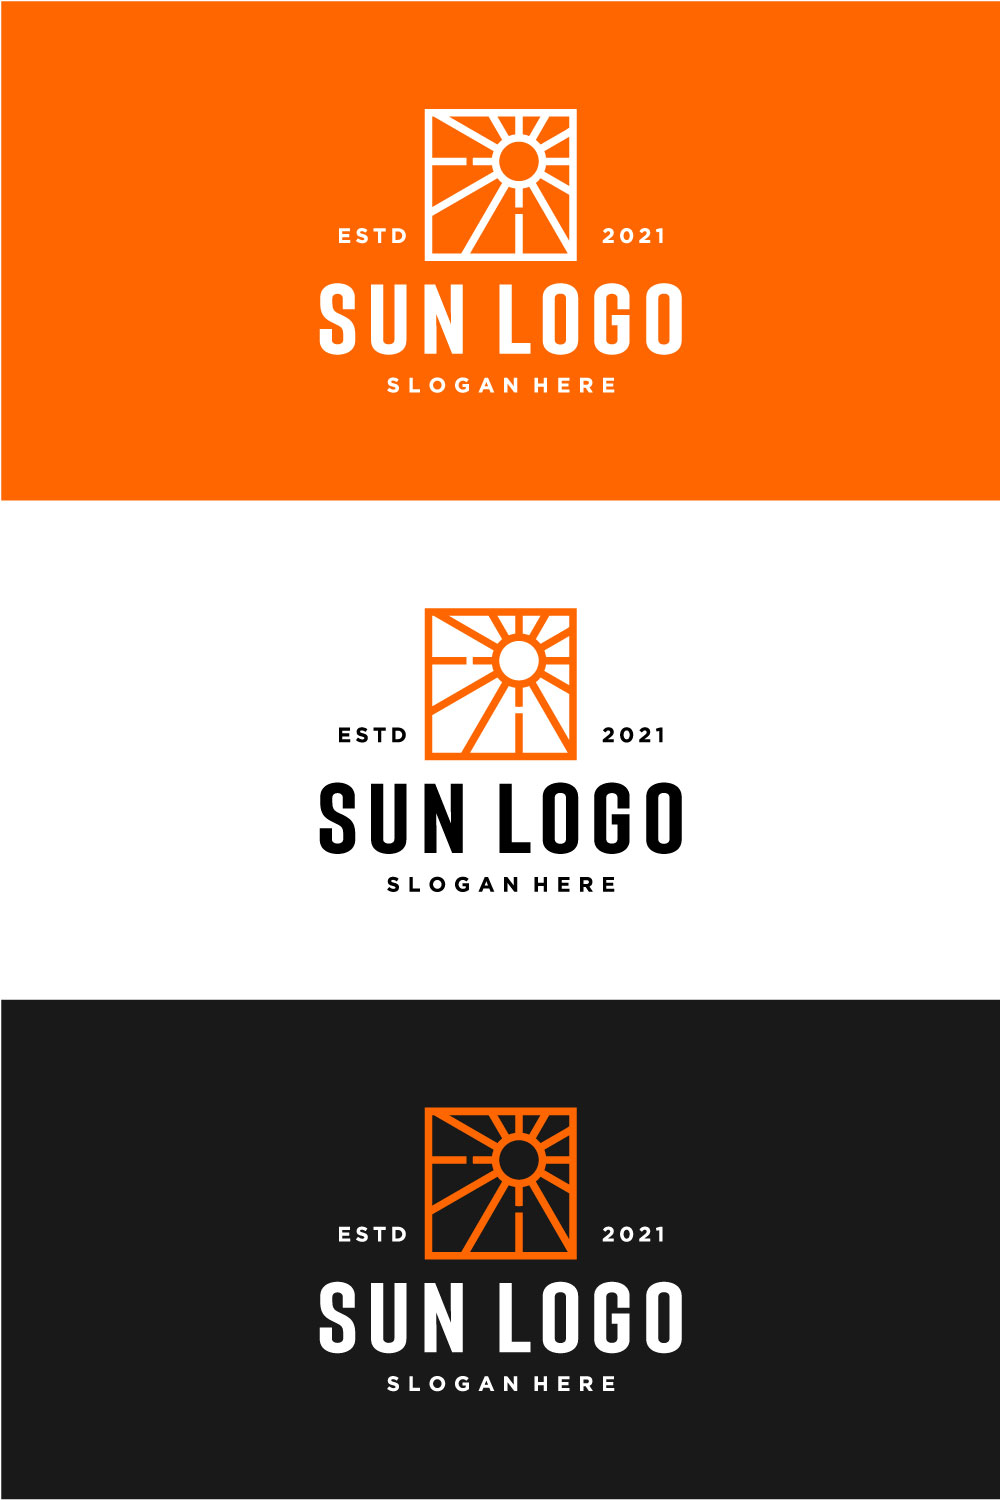 Sun Logo Vector Icon Design Pinterest Image.